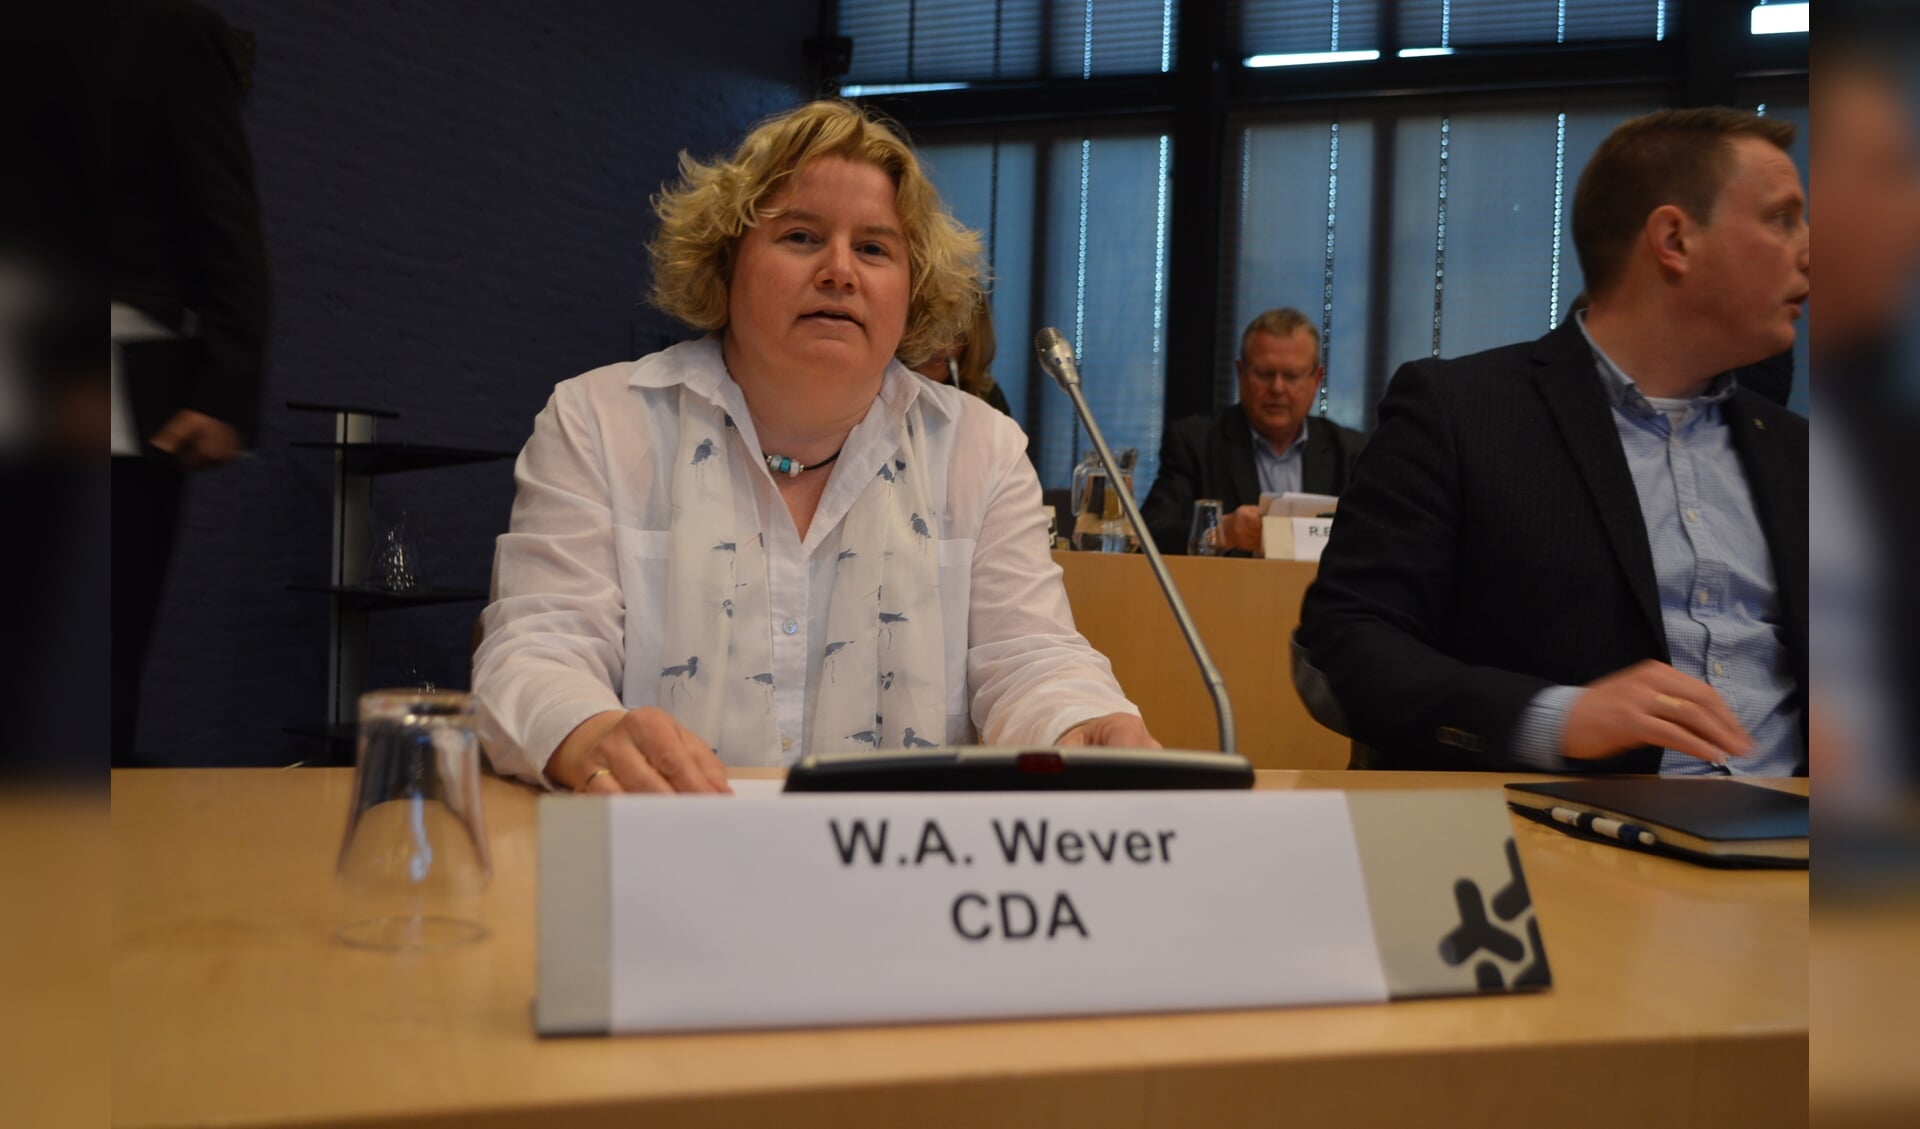 Willemien Wever, CDA